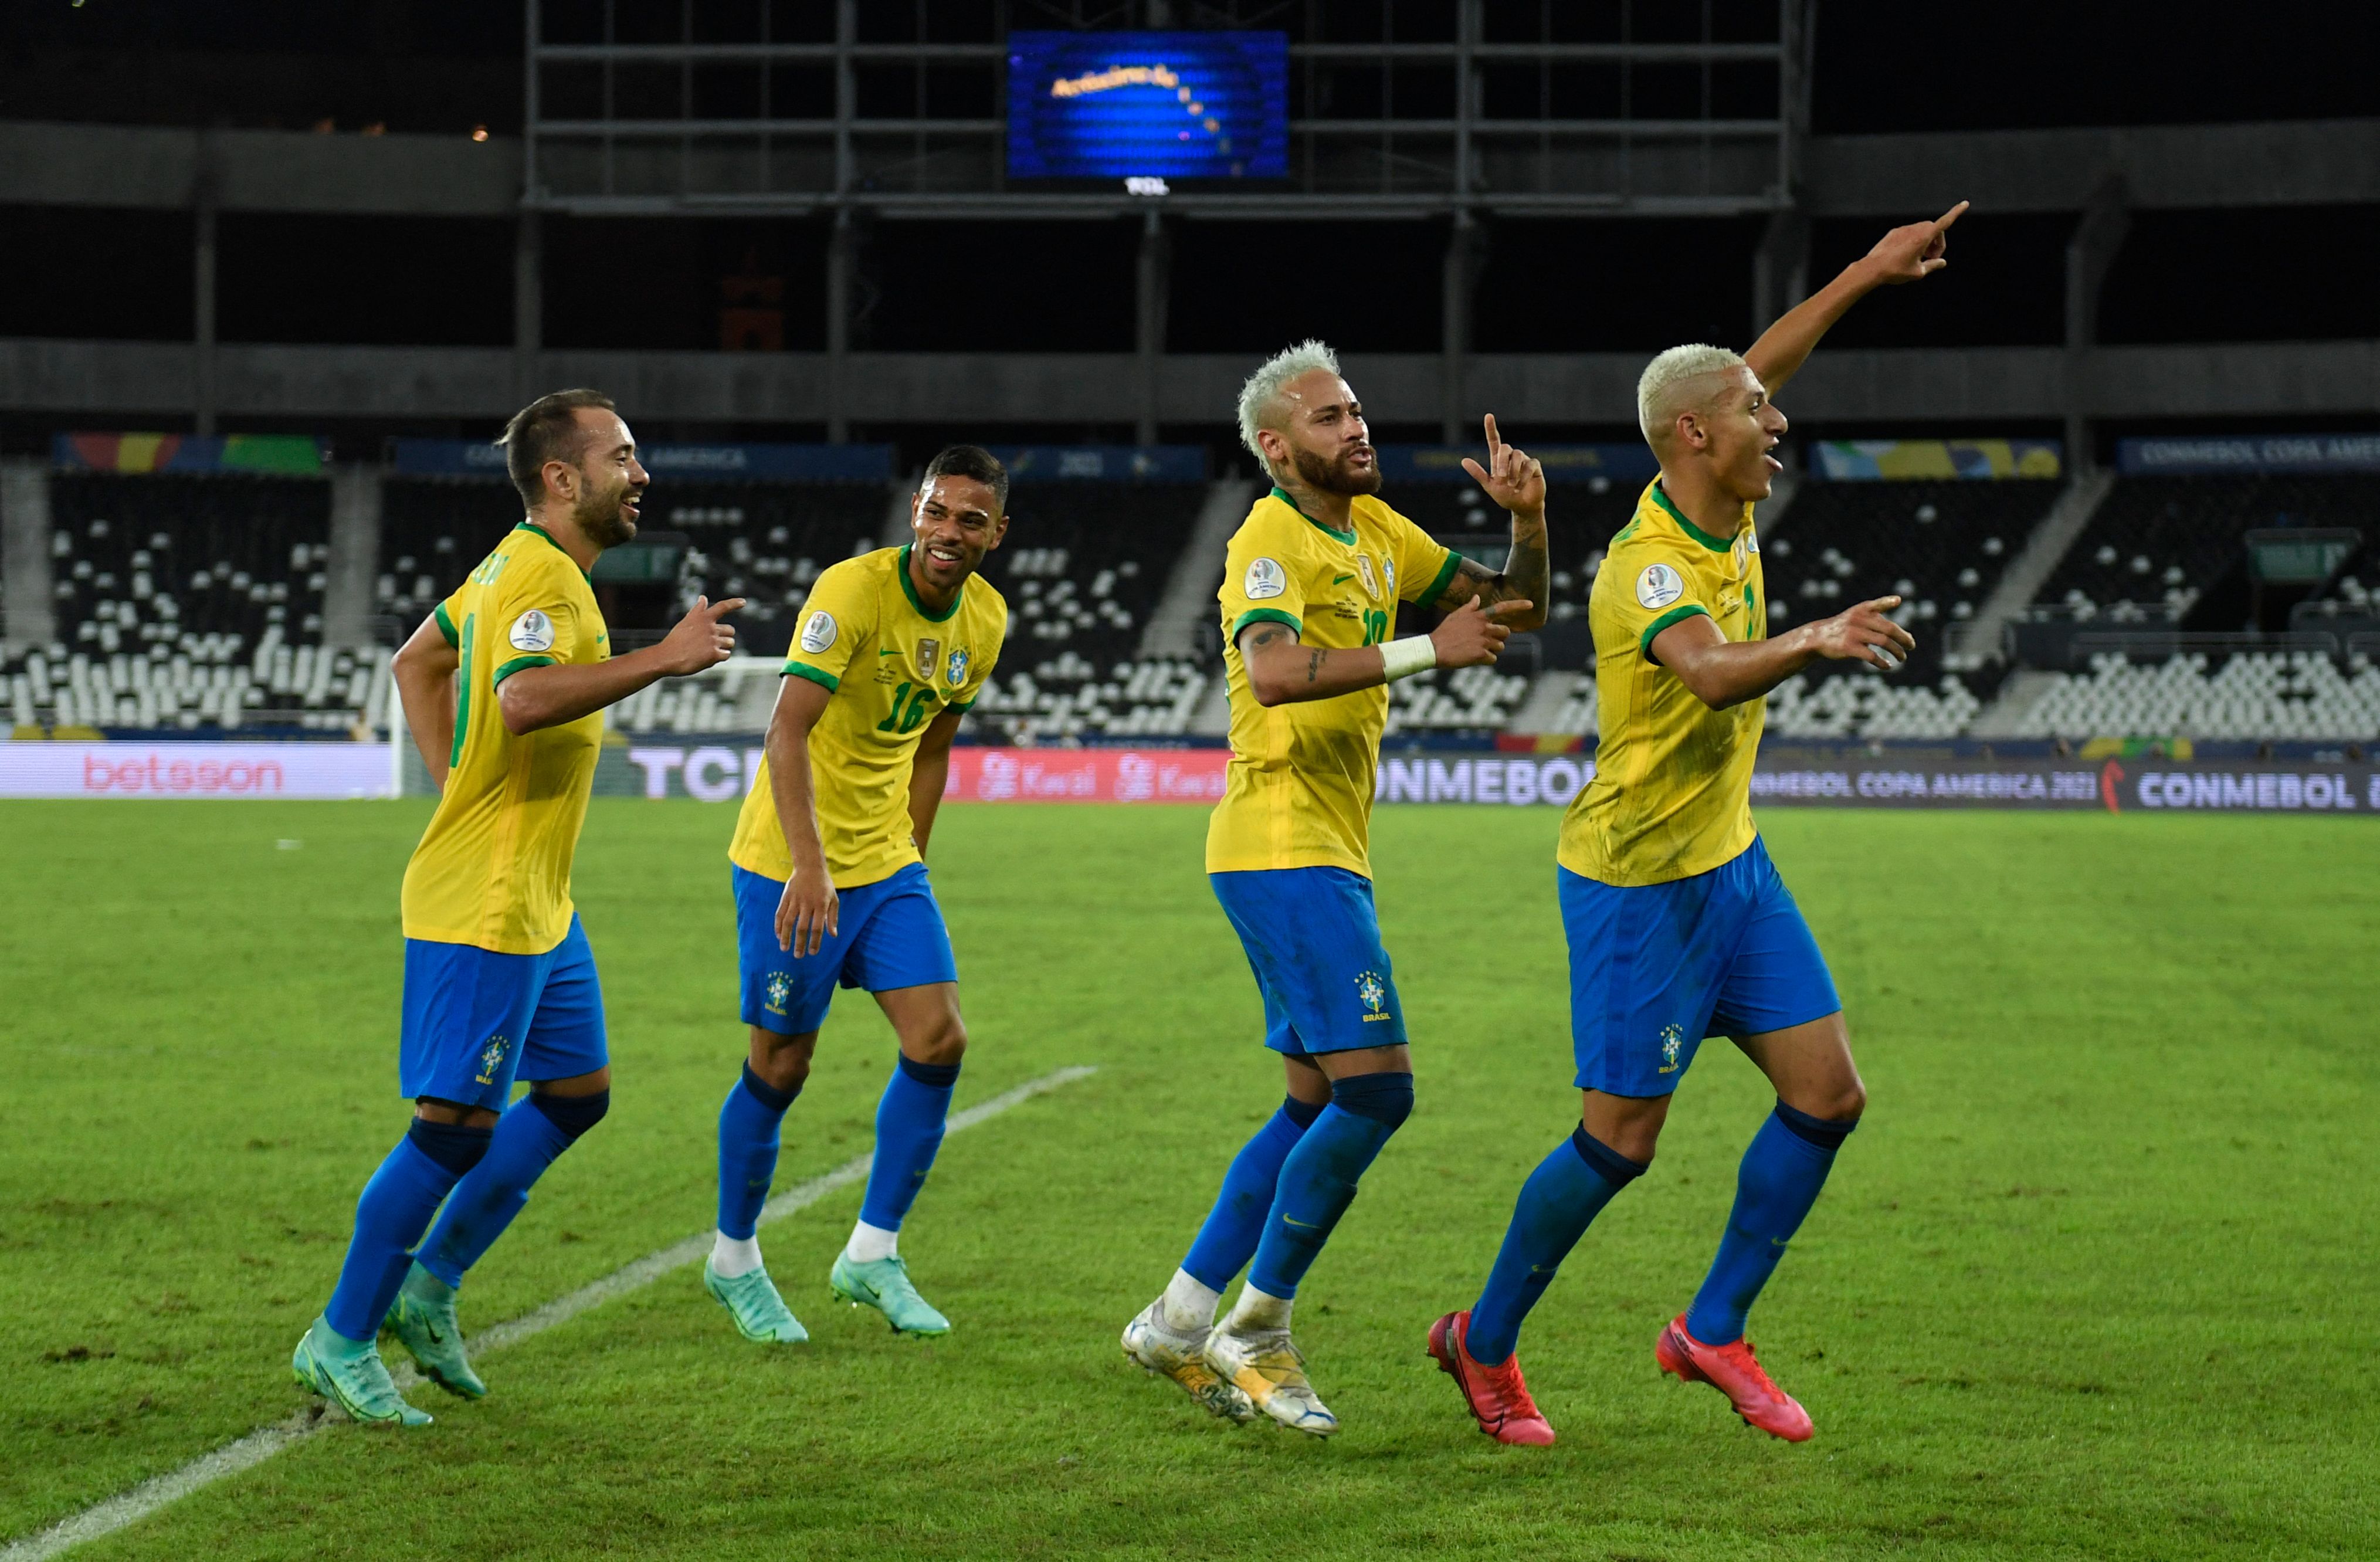 La Selección de Brasil ha tenido una gran actuación en la Copa América, ha ganado con superioridad sus primeros dos partidos. (Foto Prensa Libre: EFE).